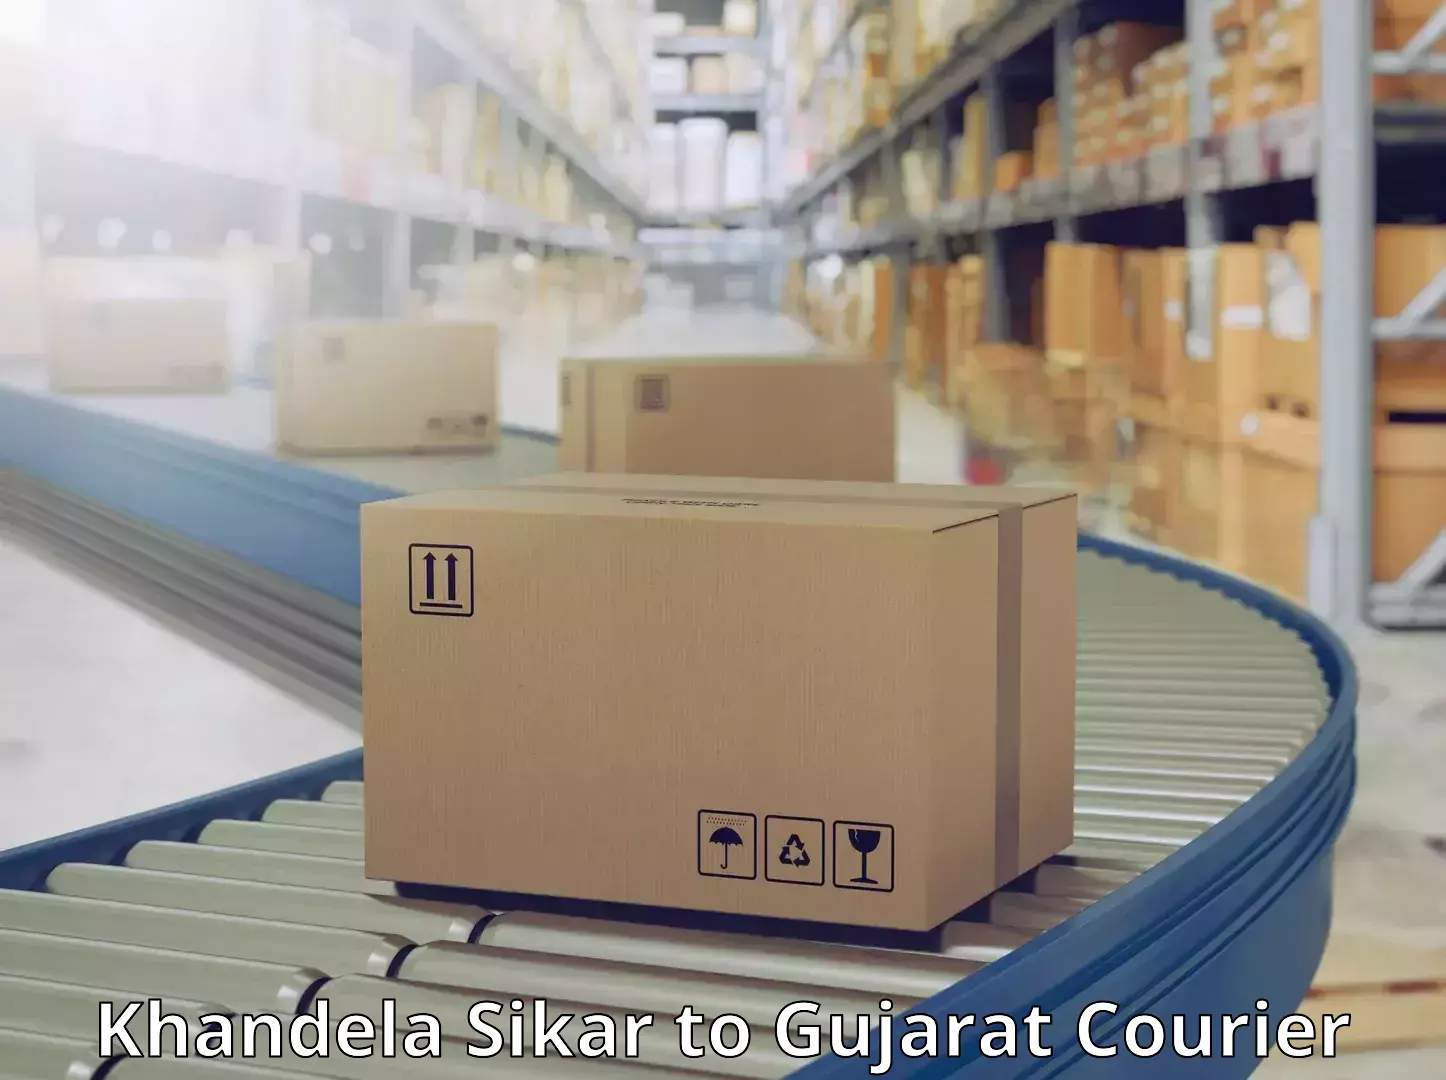 Customer-focused courier Khandela Sikar to Amreli